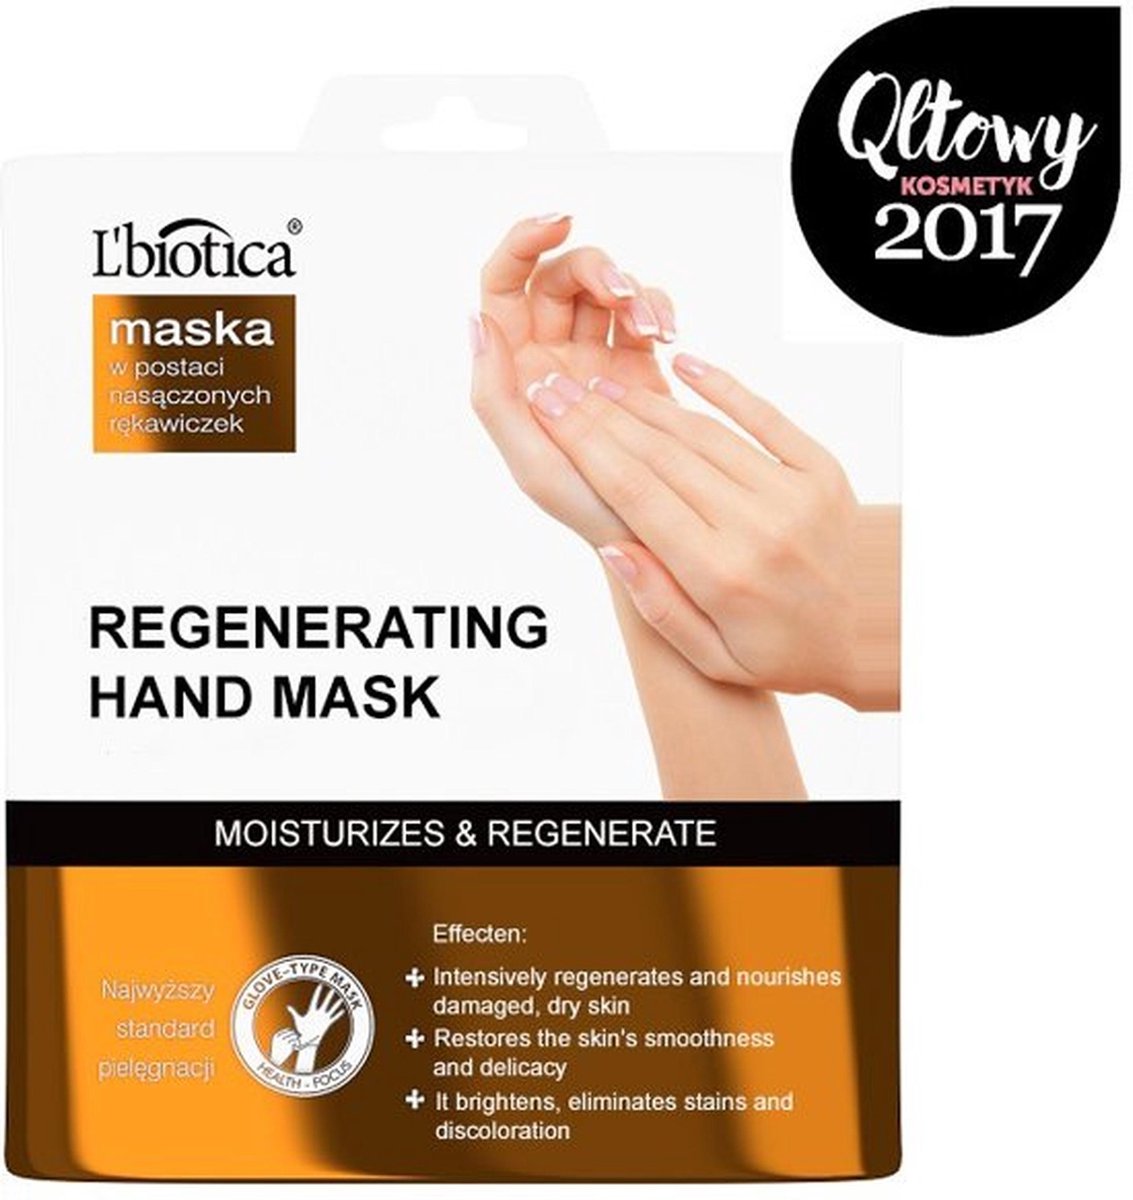 4x Stuks REGENERERENDE HAND MASKER -Huid verzorging-Eelt-Eelt masker-Regenererend masker-Pedicure -deze masker Herstelt de zachtheid van de huid en geeft een gezonde uitstraling.